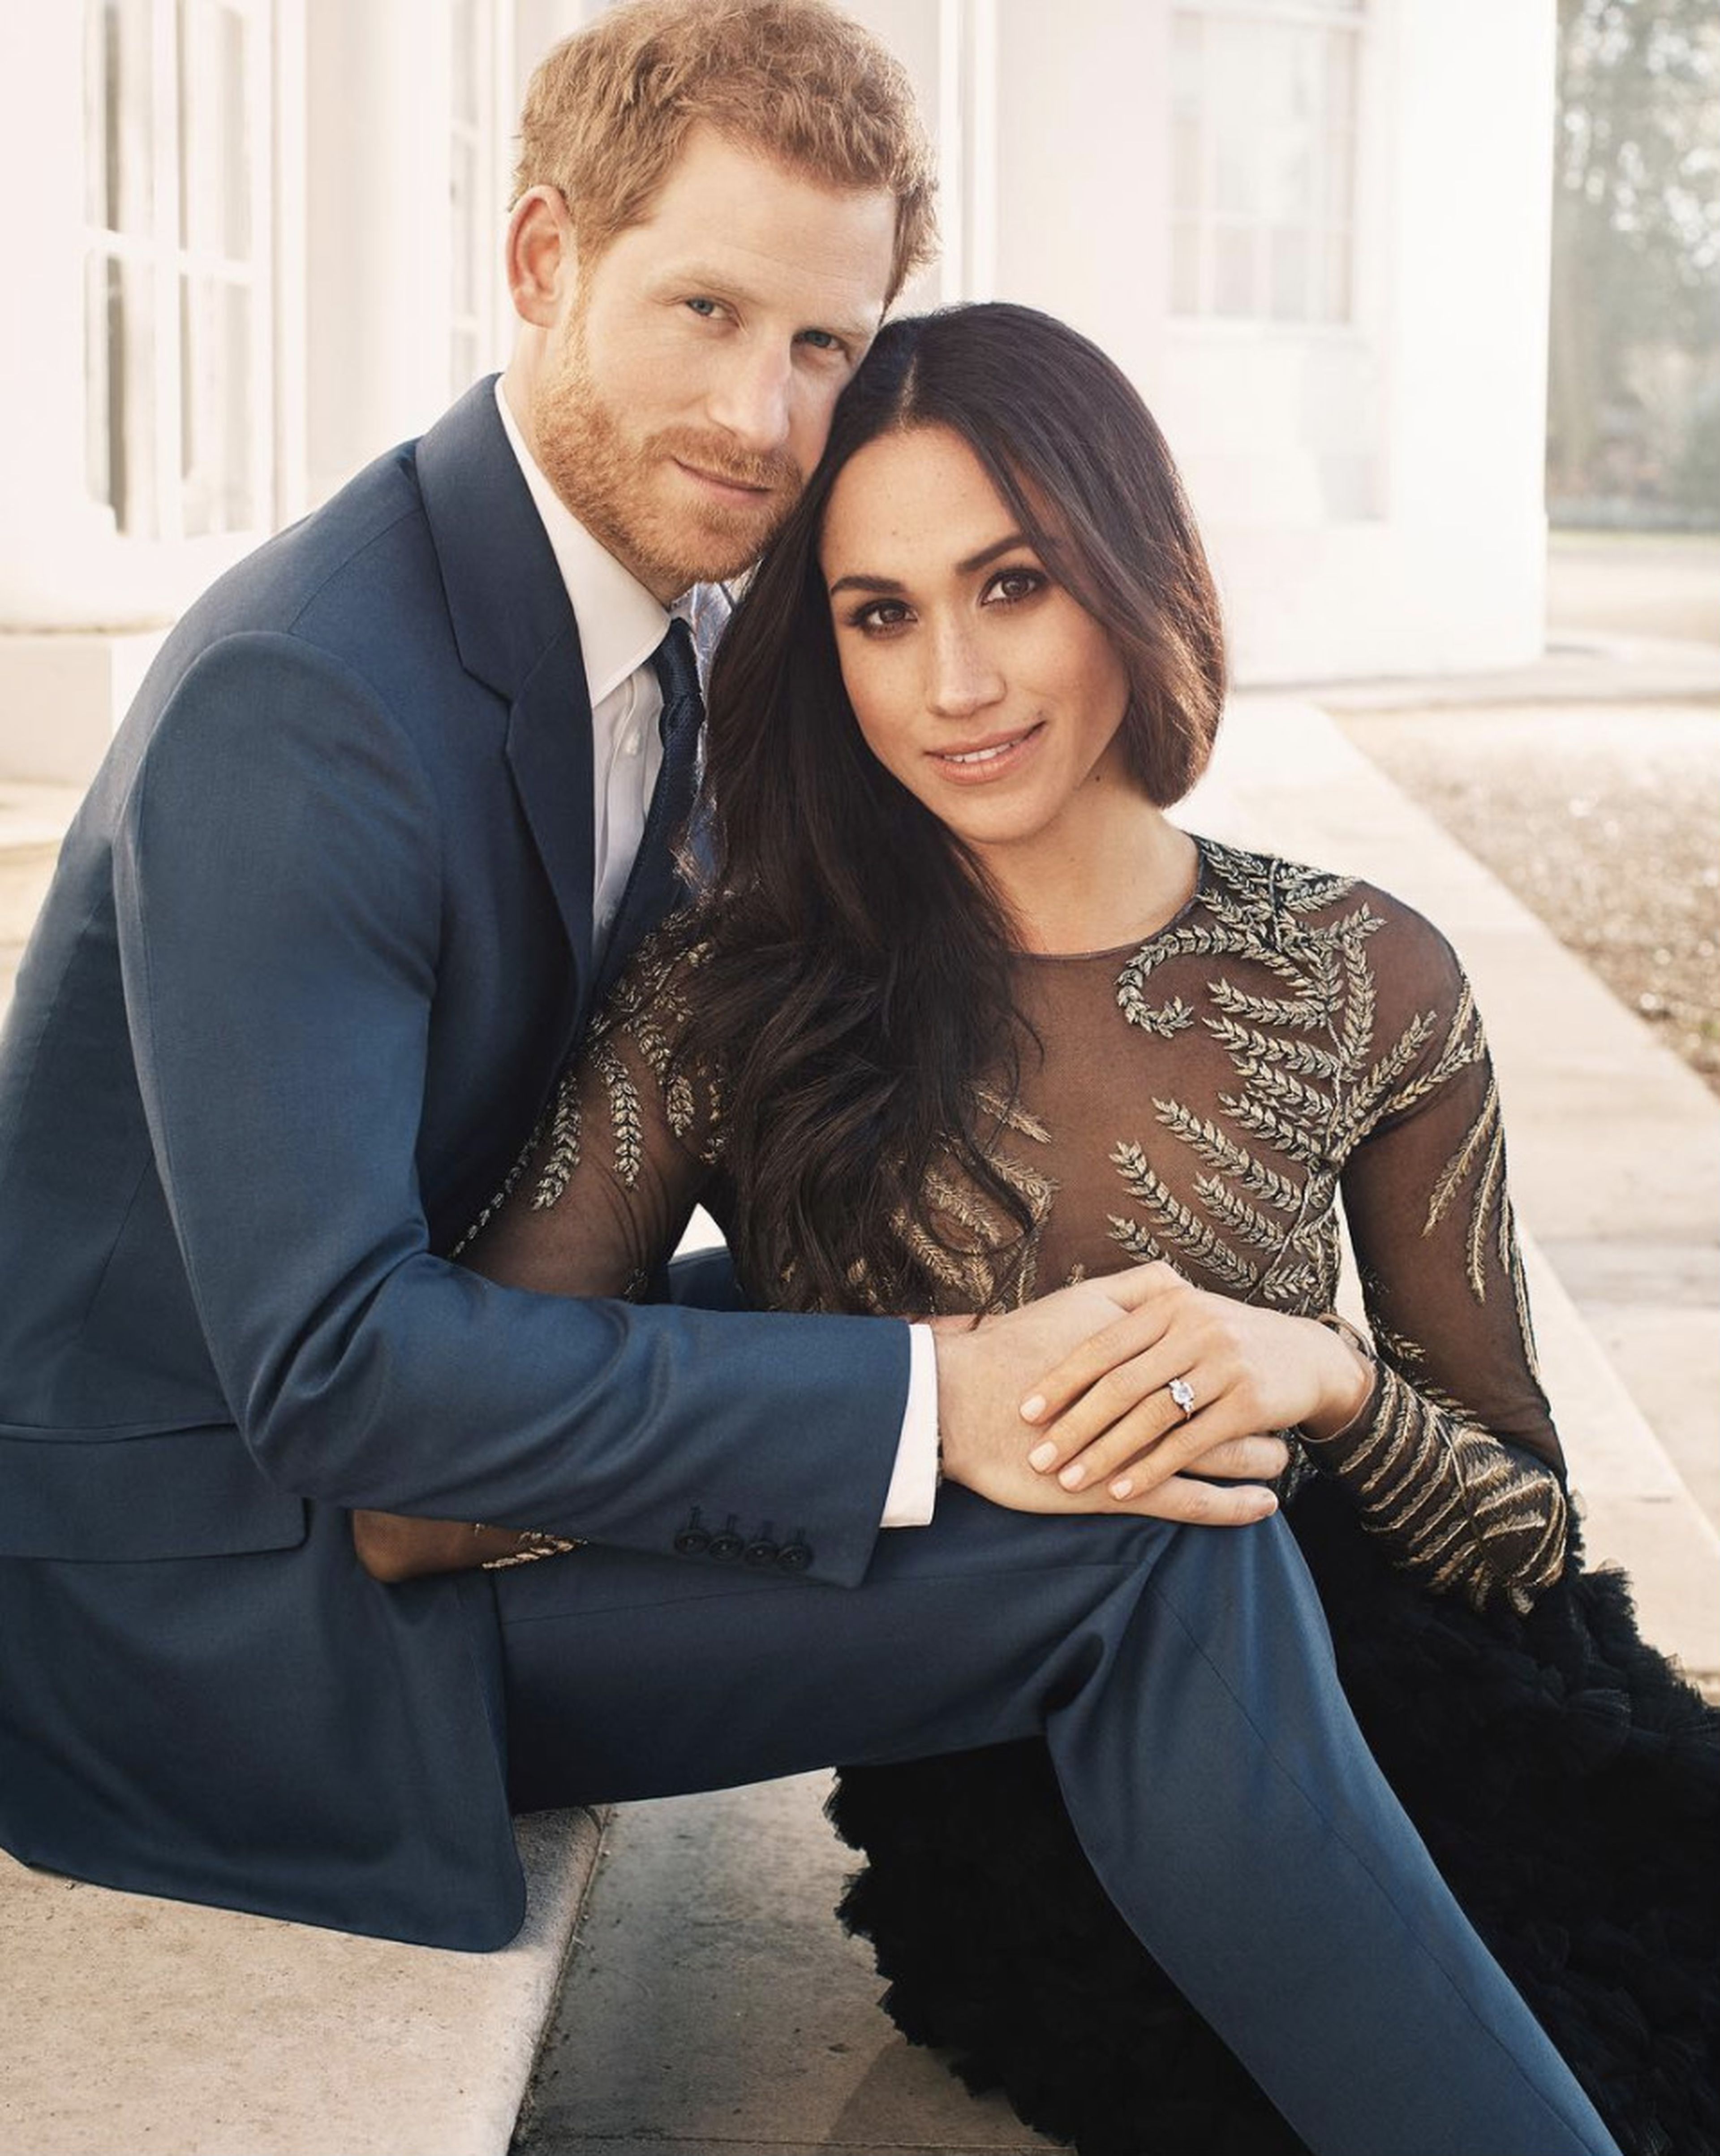 Imagen del compromiso del príncipe Harry y Meghan Markle tomada por Alexi Lubomirski.